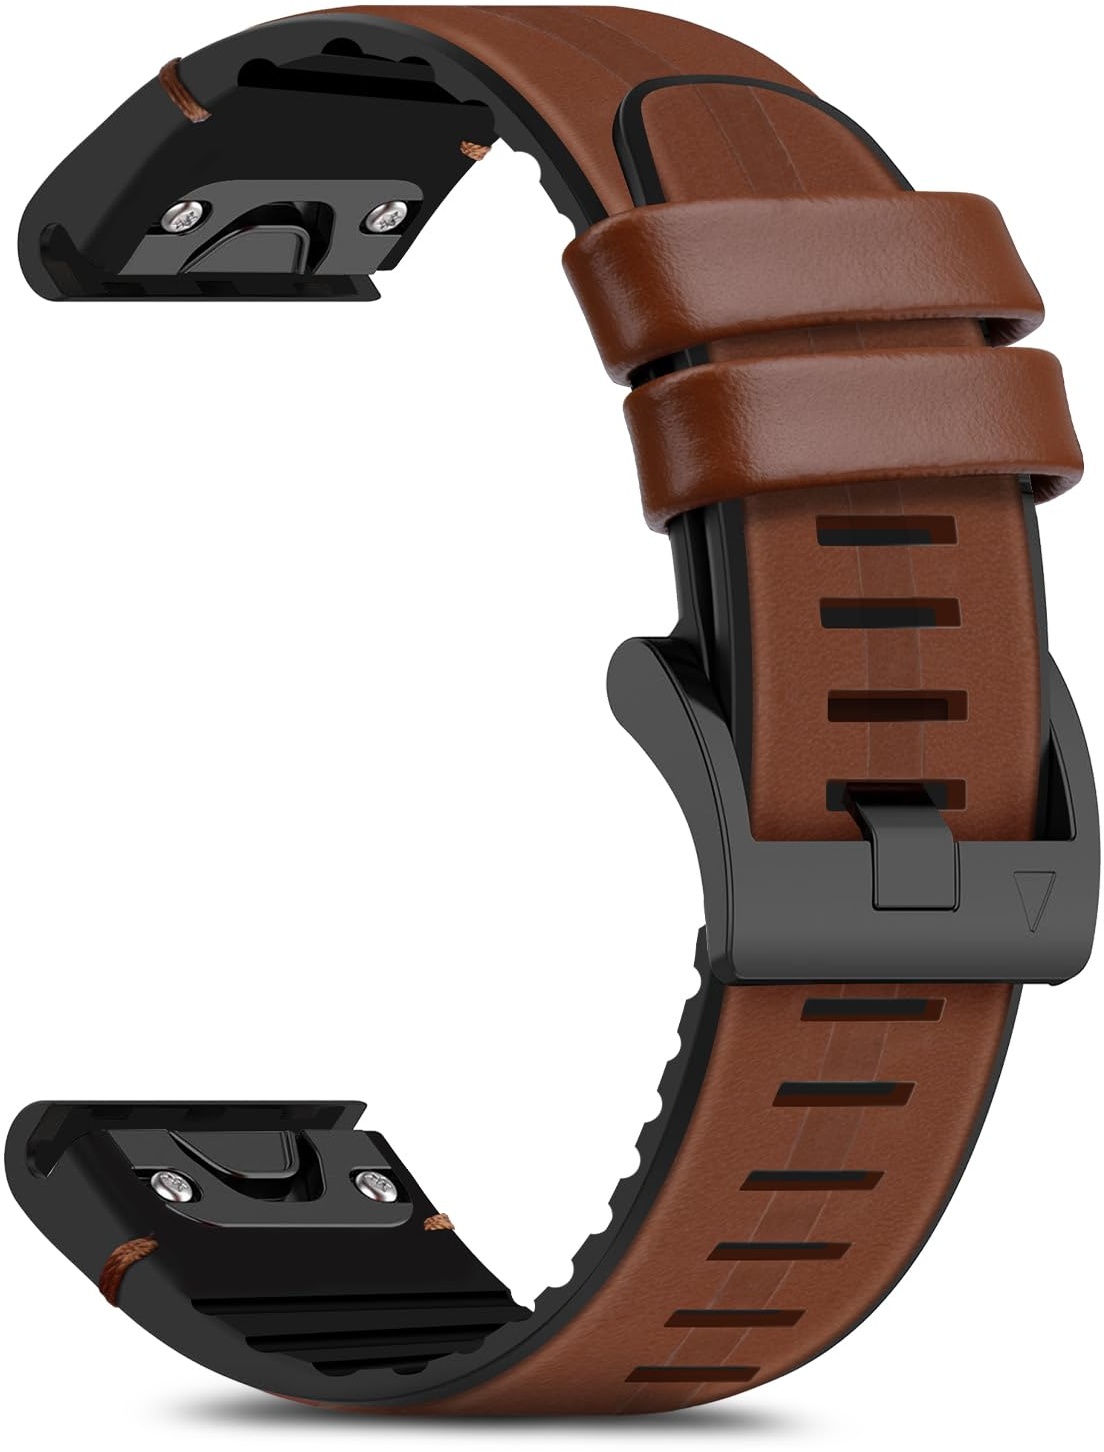 RoYiio Echte Leder Armband für Garmin QuickFit 22mm, Weich und Bequem, Silikon ErsatzArmband Kompatibel mit Garmin Fenix Quatix 6X 7X Pro MARQ Approach S62 S60 - Braun